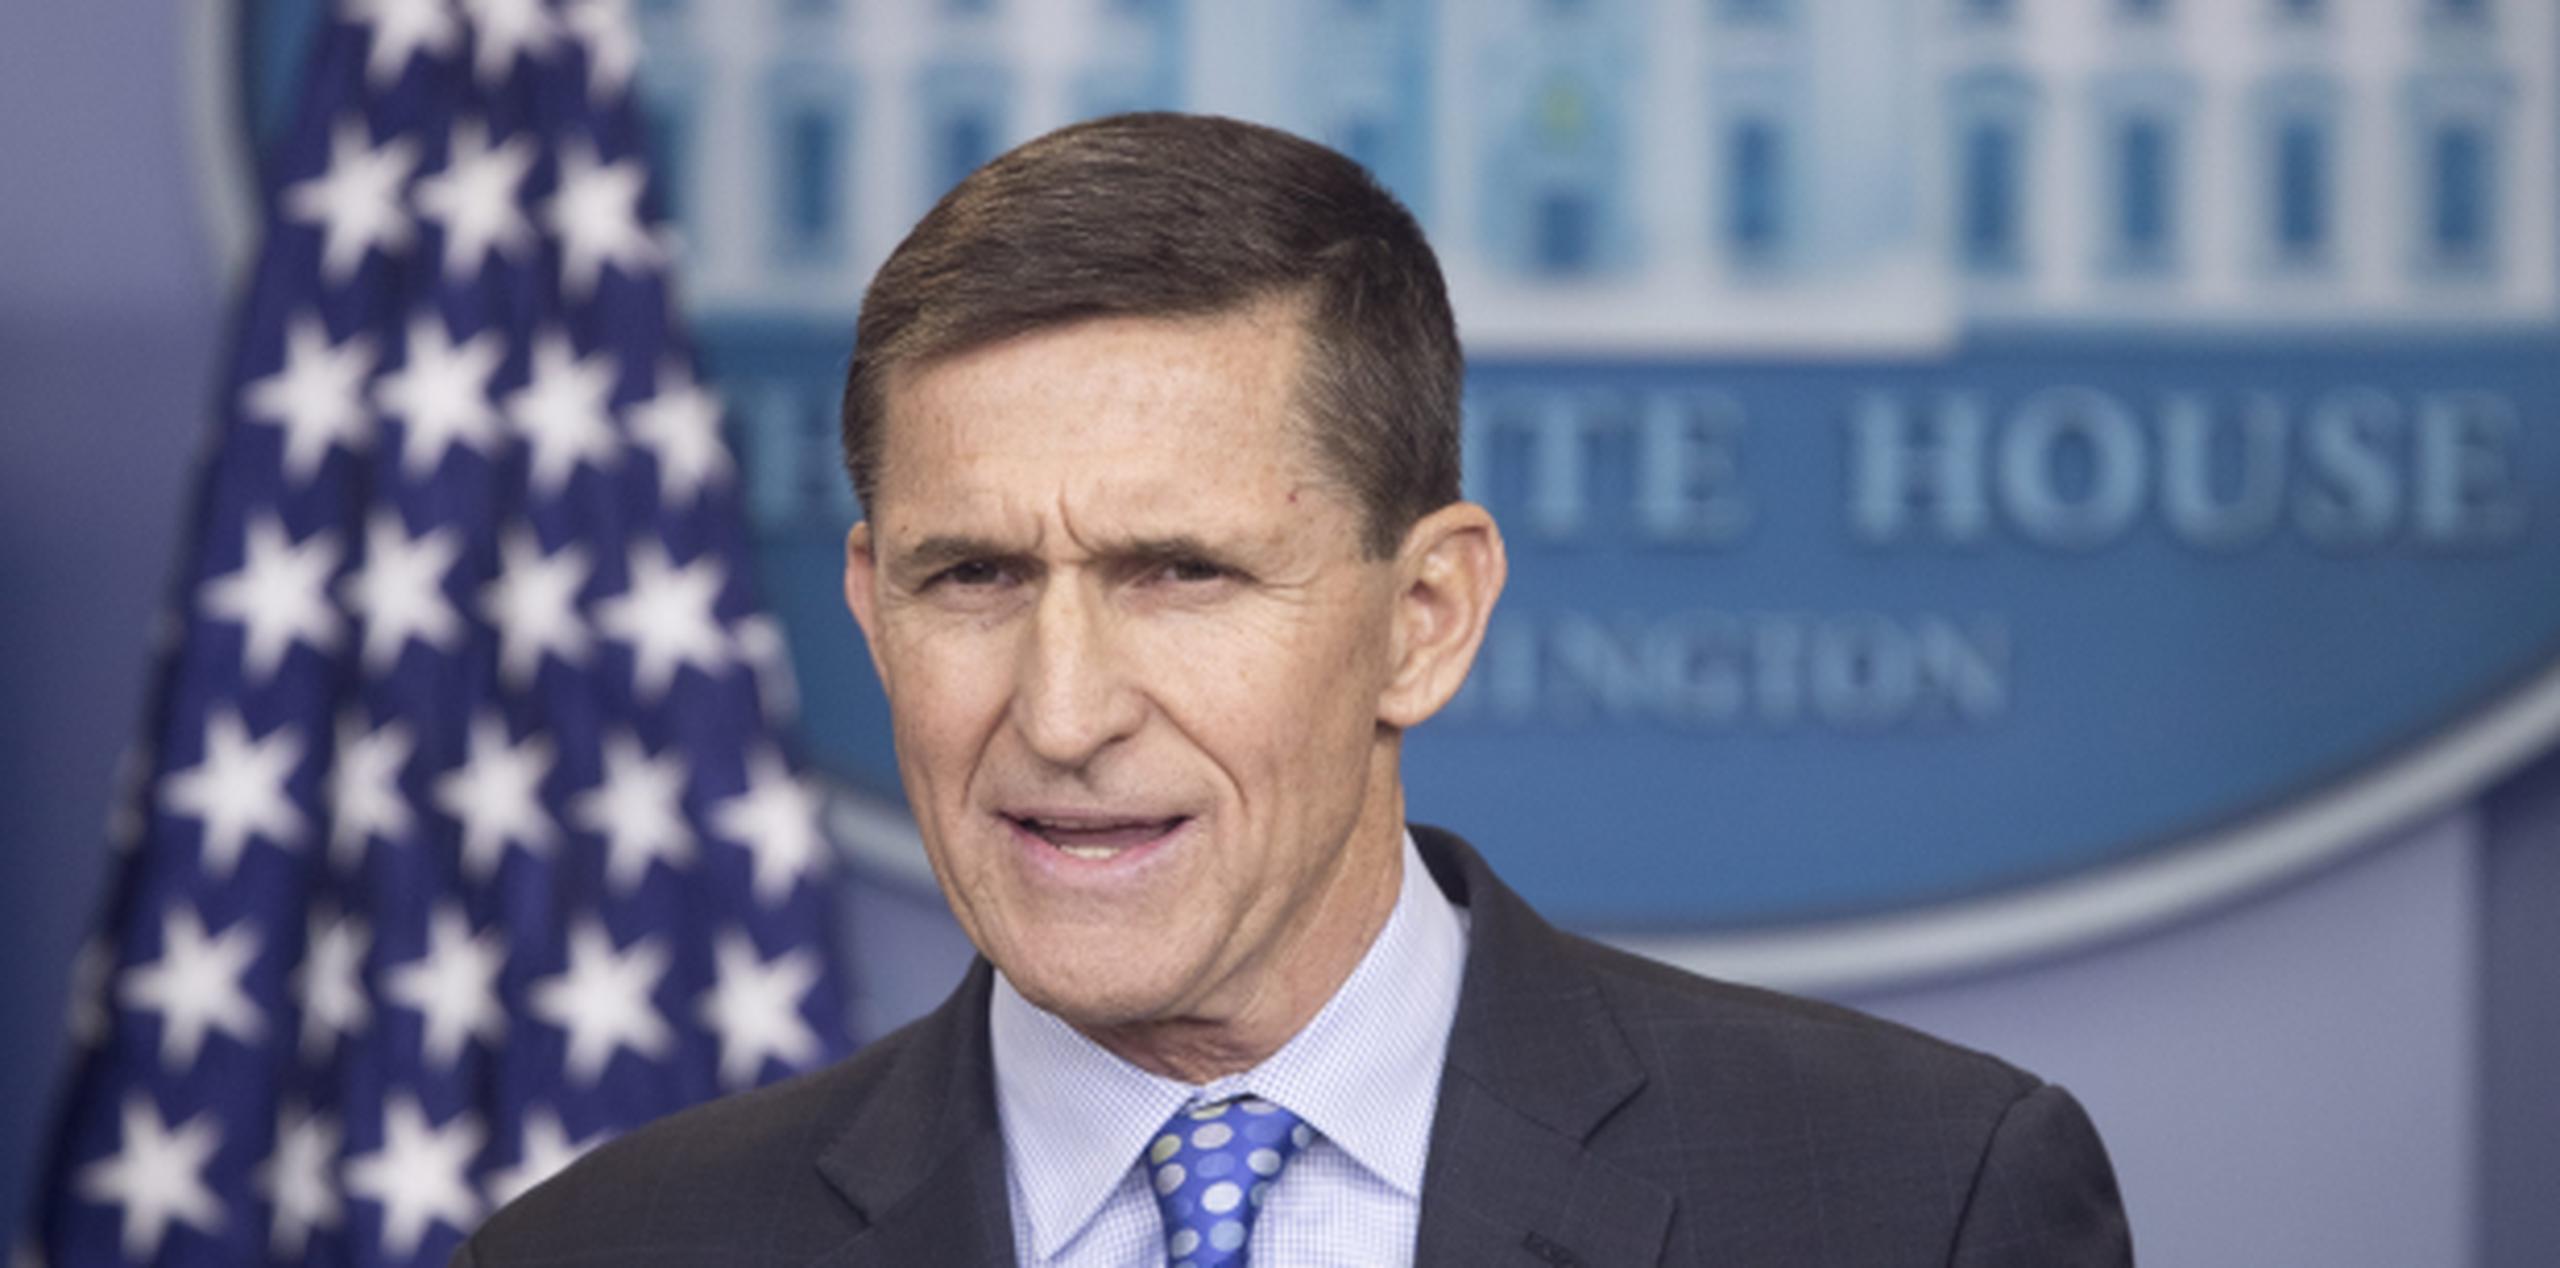 Flynn fue uno de los asesores de la campaña presidencial de Trump y posteriormente se hizo cargo de uno de los puestos claves de su Administración. (EFE / Michael Reynolds)